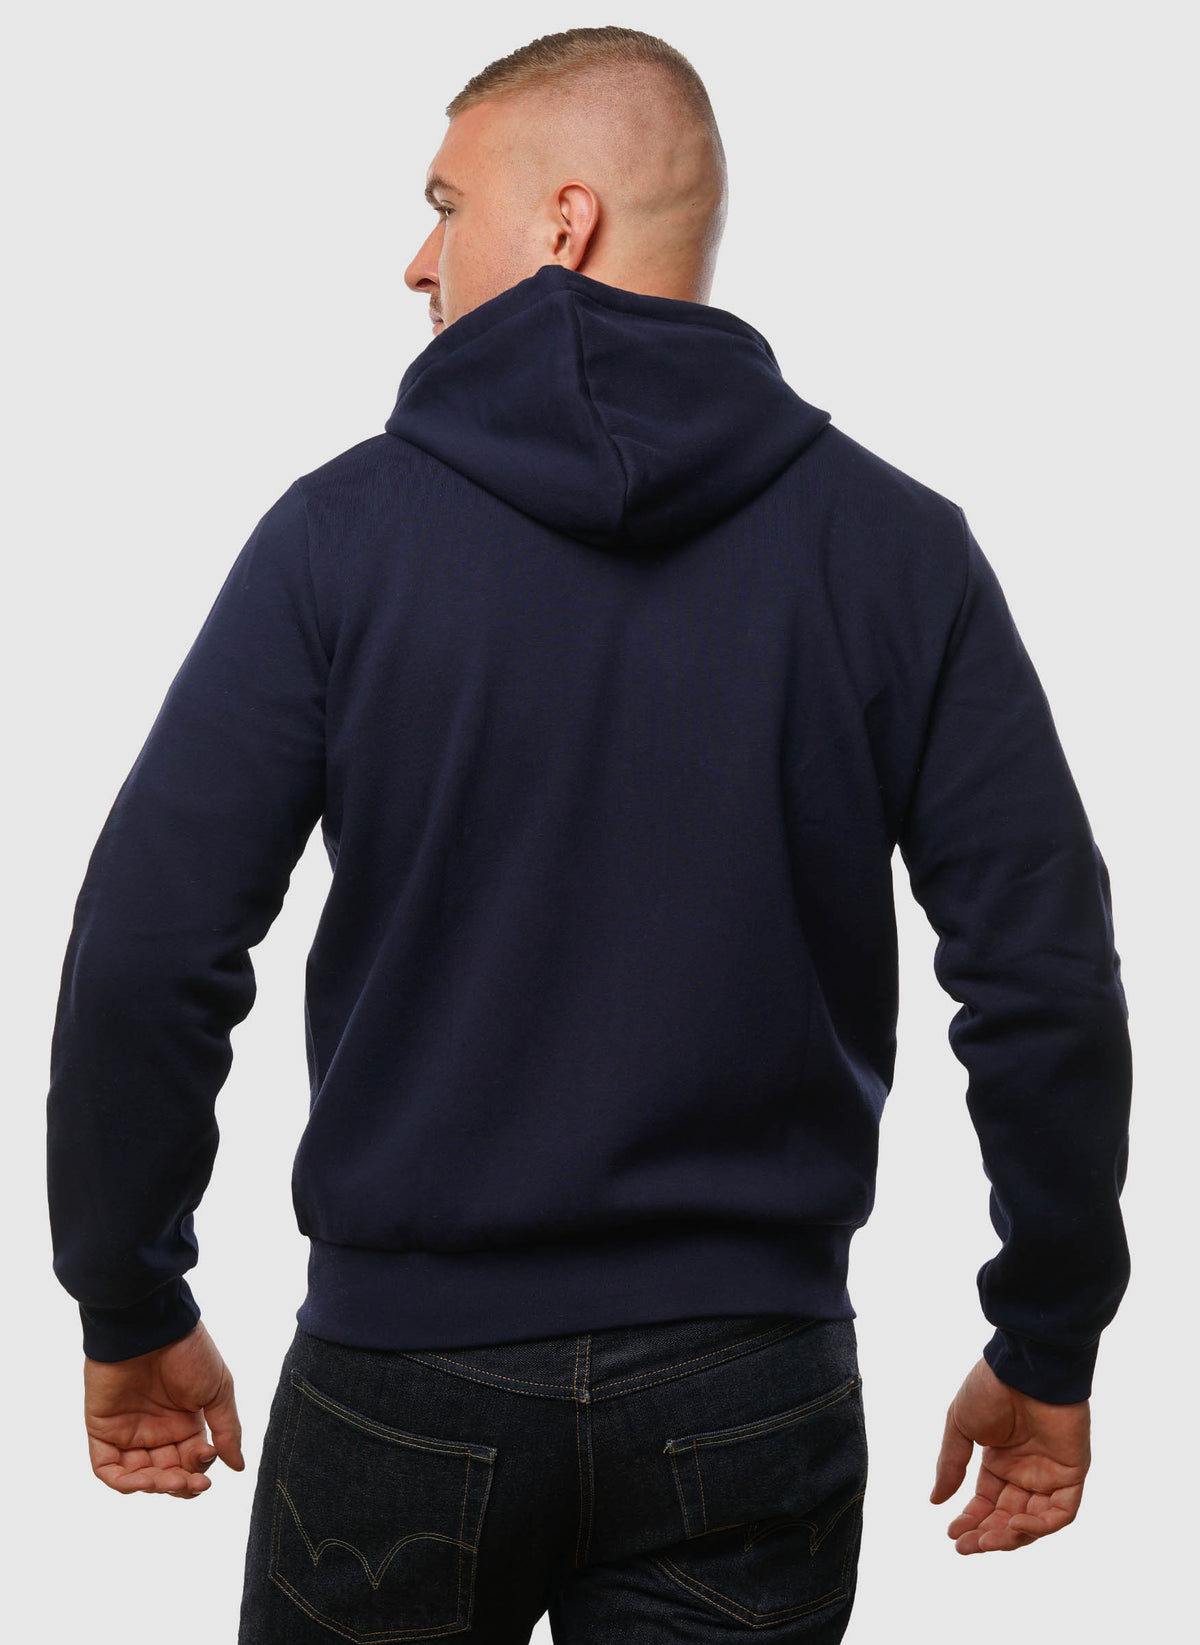 Classic Hooded Sweatshirt Jacket - Navy